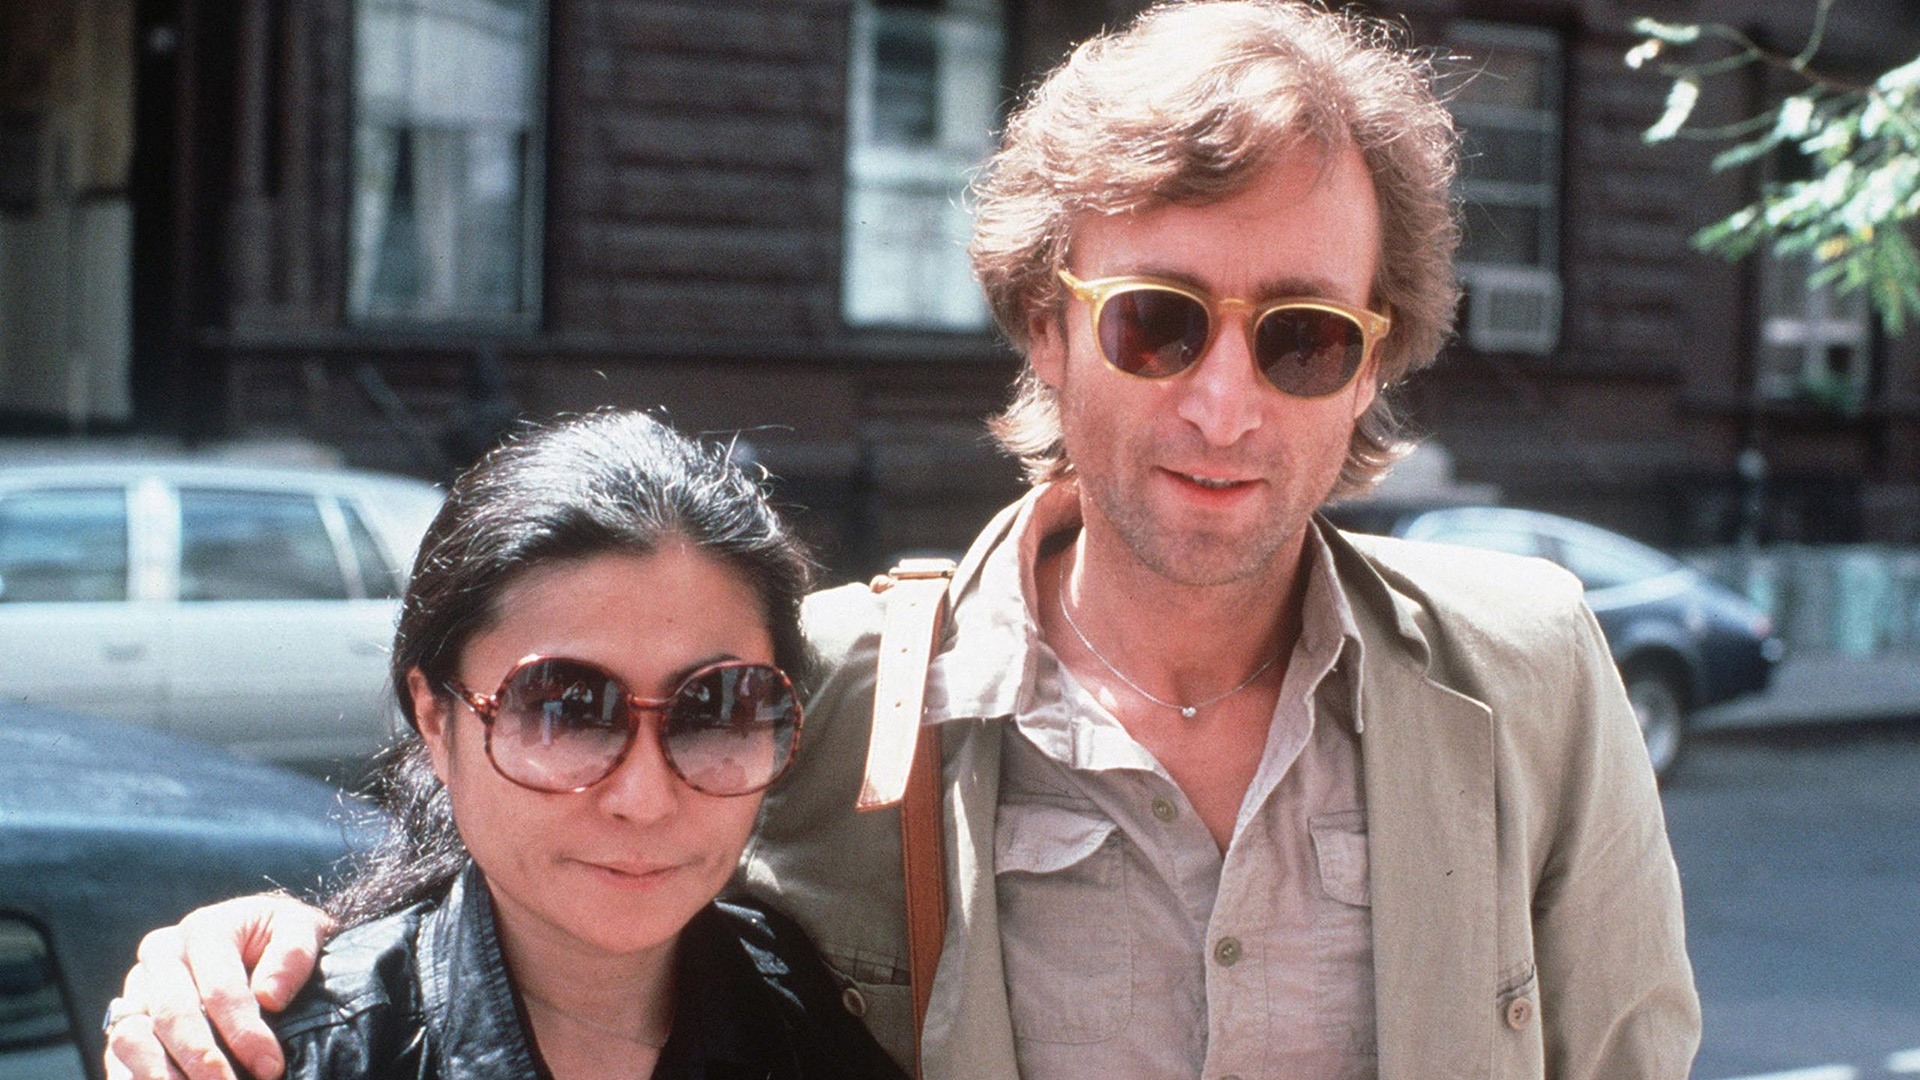 La aparición de Yoko revolucionó el mundo de John. La pareja estaba siempre junta. En las salidas, en las grabaciones de los Beatles, en las entrevistas. Sus mundos se fusionaron, los personales y los creativos (AP)